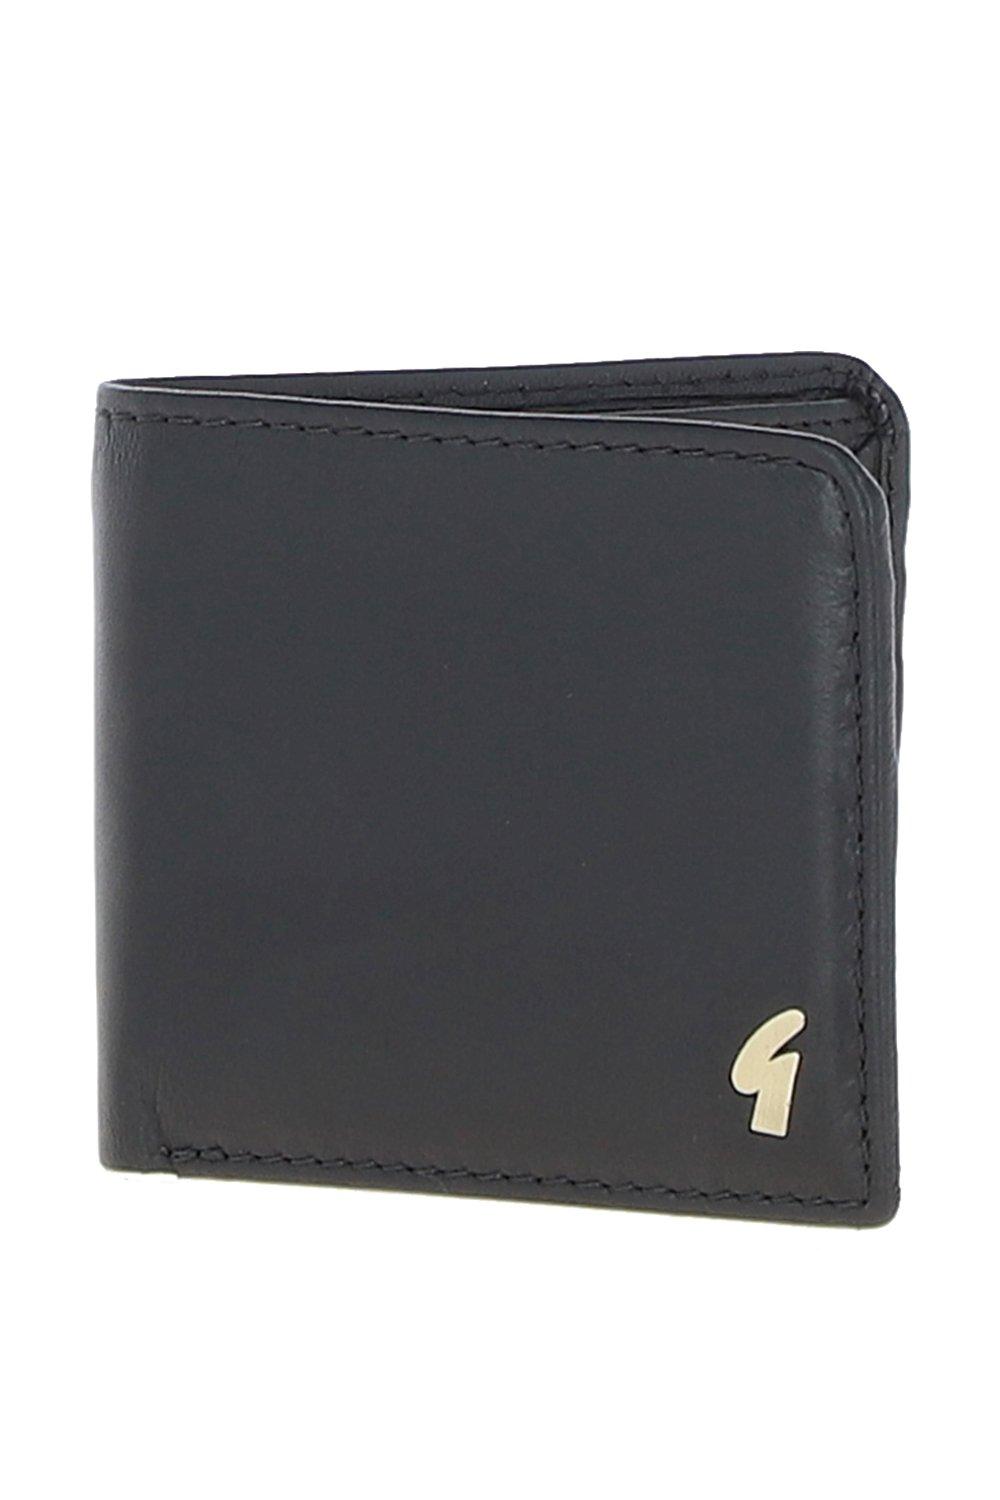 Классический кошелек '801' из натуральной кожи на 8 карточек GABICCI, черный мужской клатч кошелек из натуральной кожи длинный бумажник для сотового телефона простая многофункциональная деловая сумка на молнии из